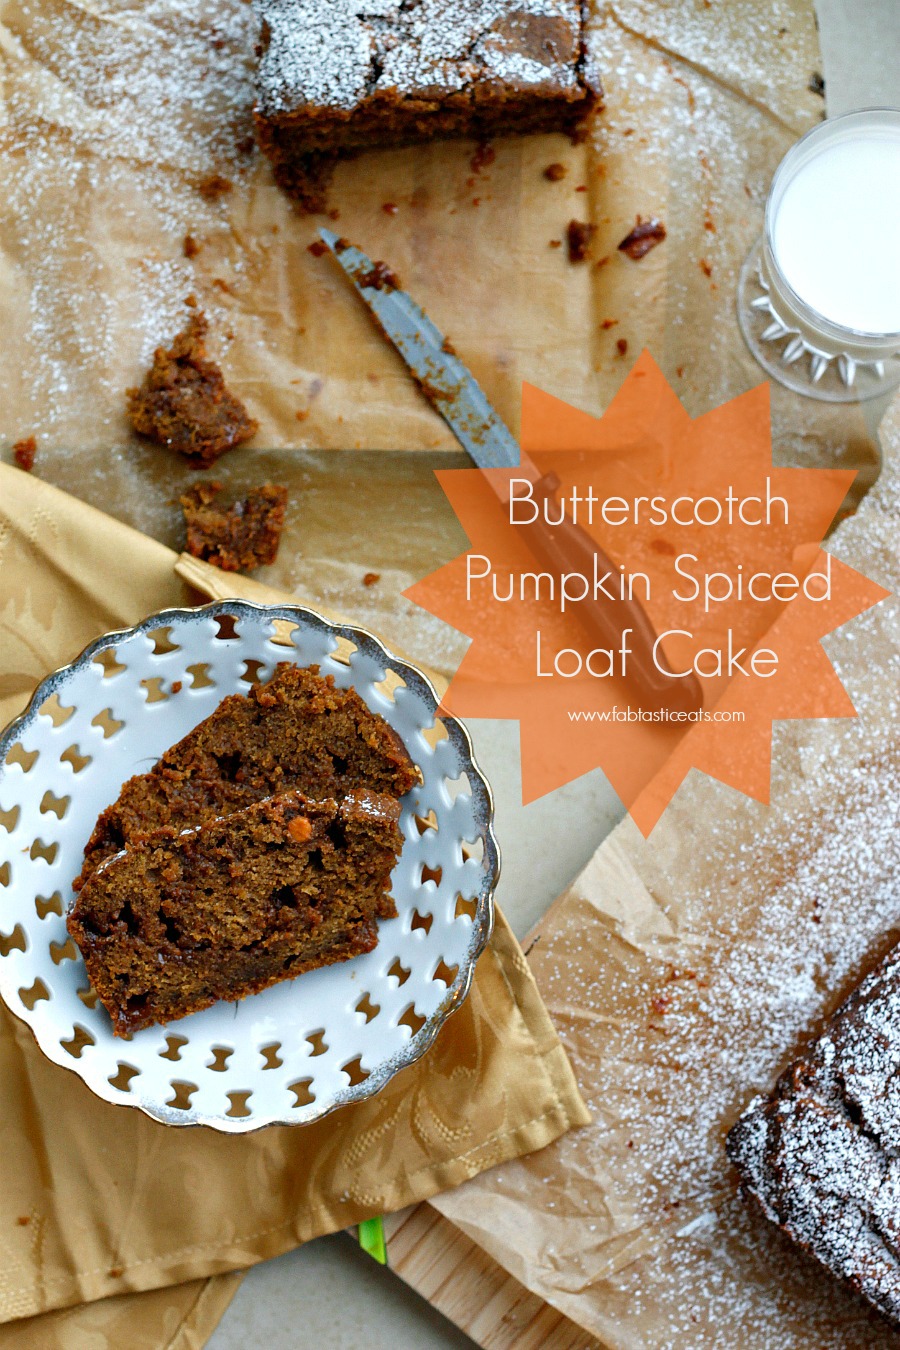 Butterscotch Pumpkin Spiced Loaf Cake | Fabtastic Eats